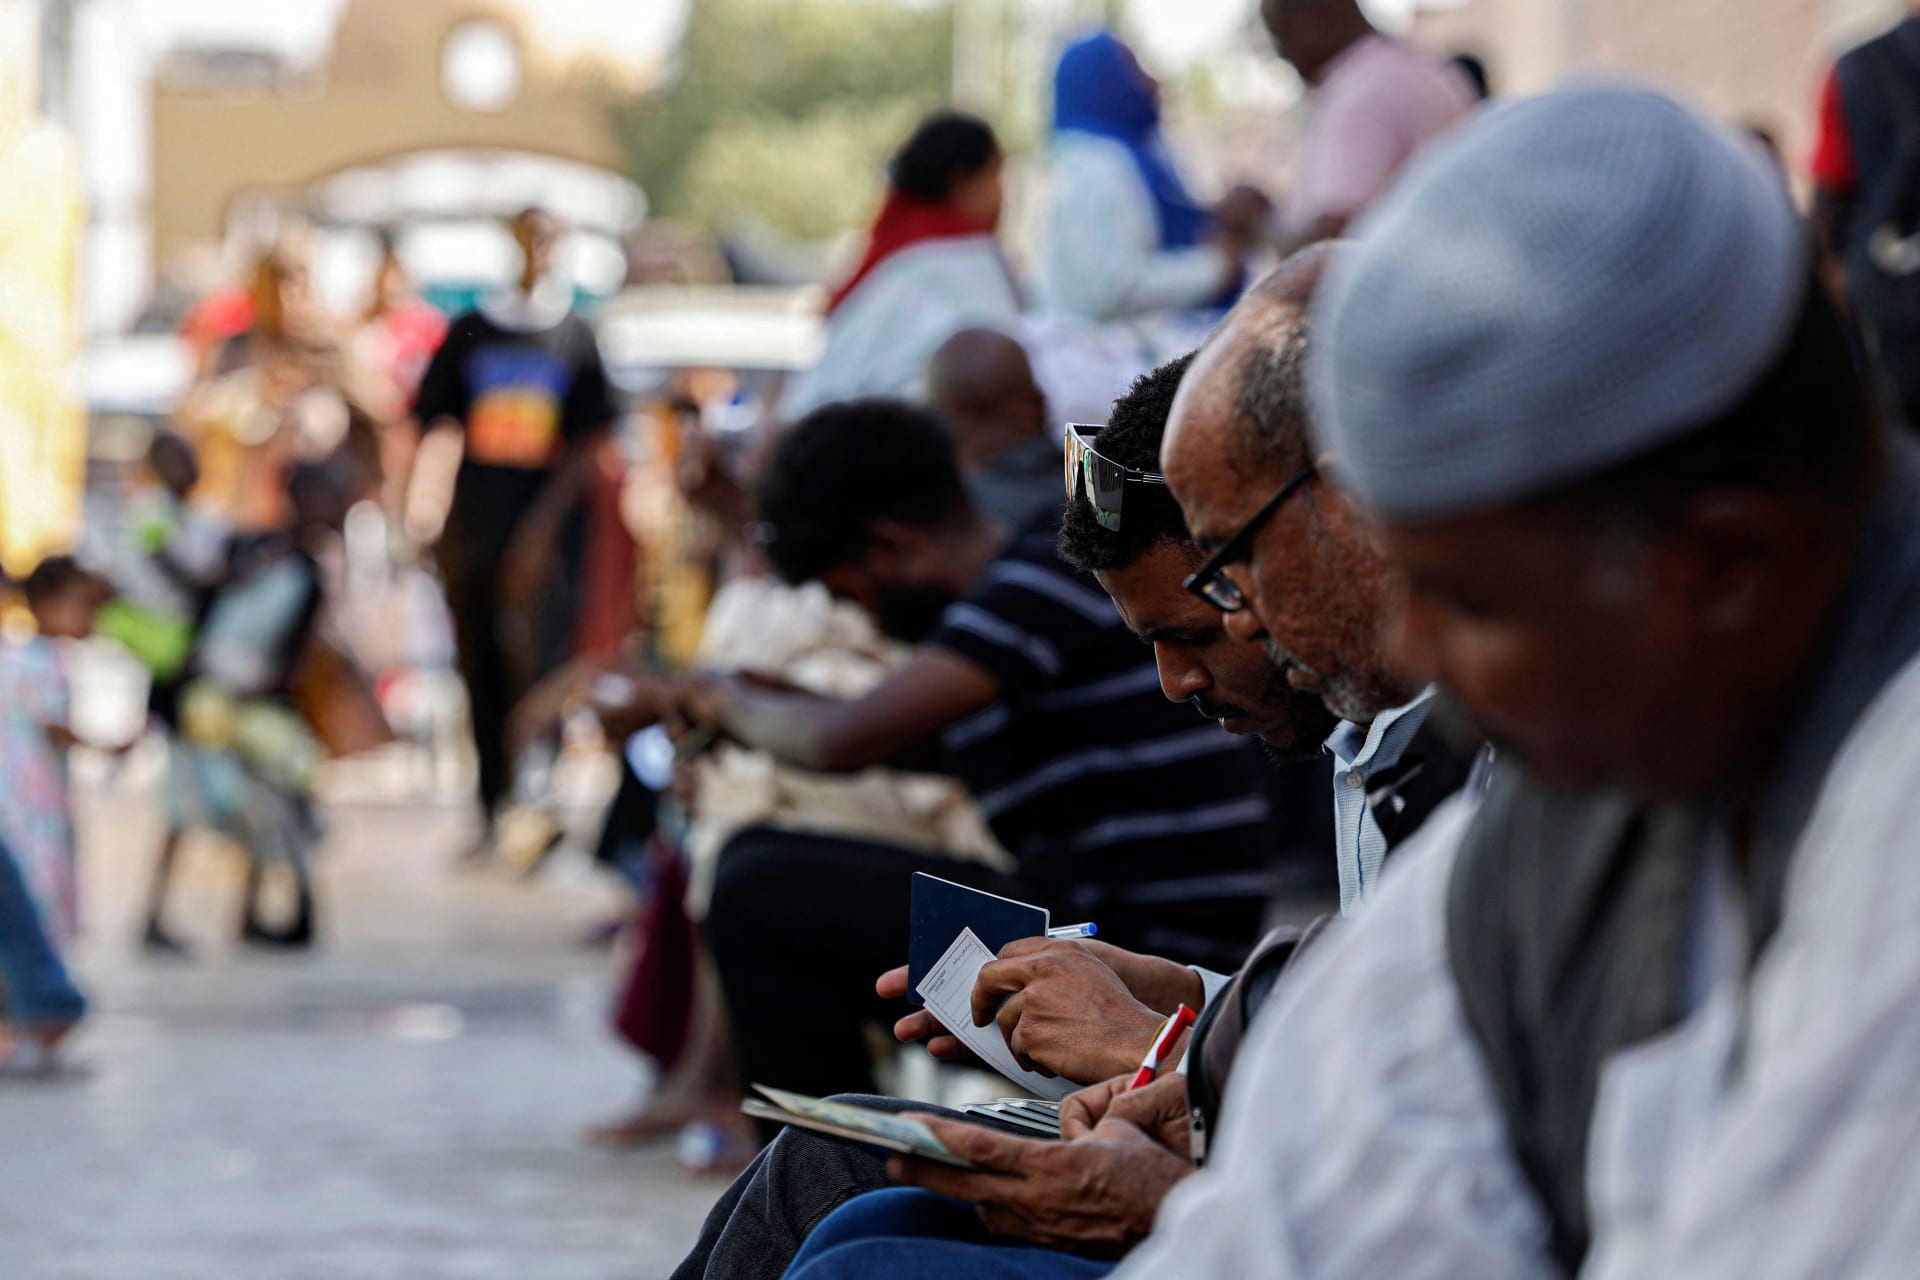 مصر تعلن تدقيق أعداد اللاجئين لـ"حصر التكاليف" بعد حملة مناهضة على الشبكات الاجتماعية